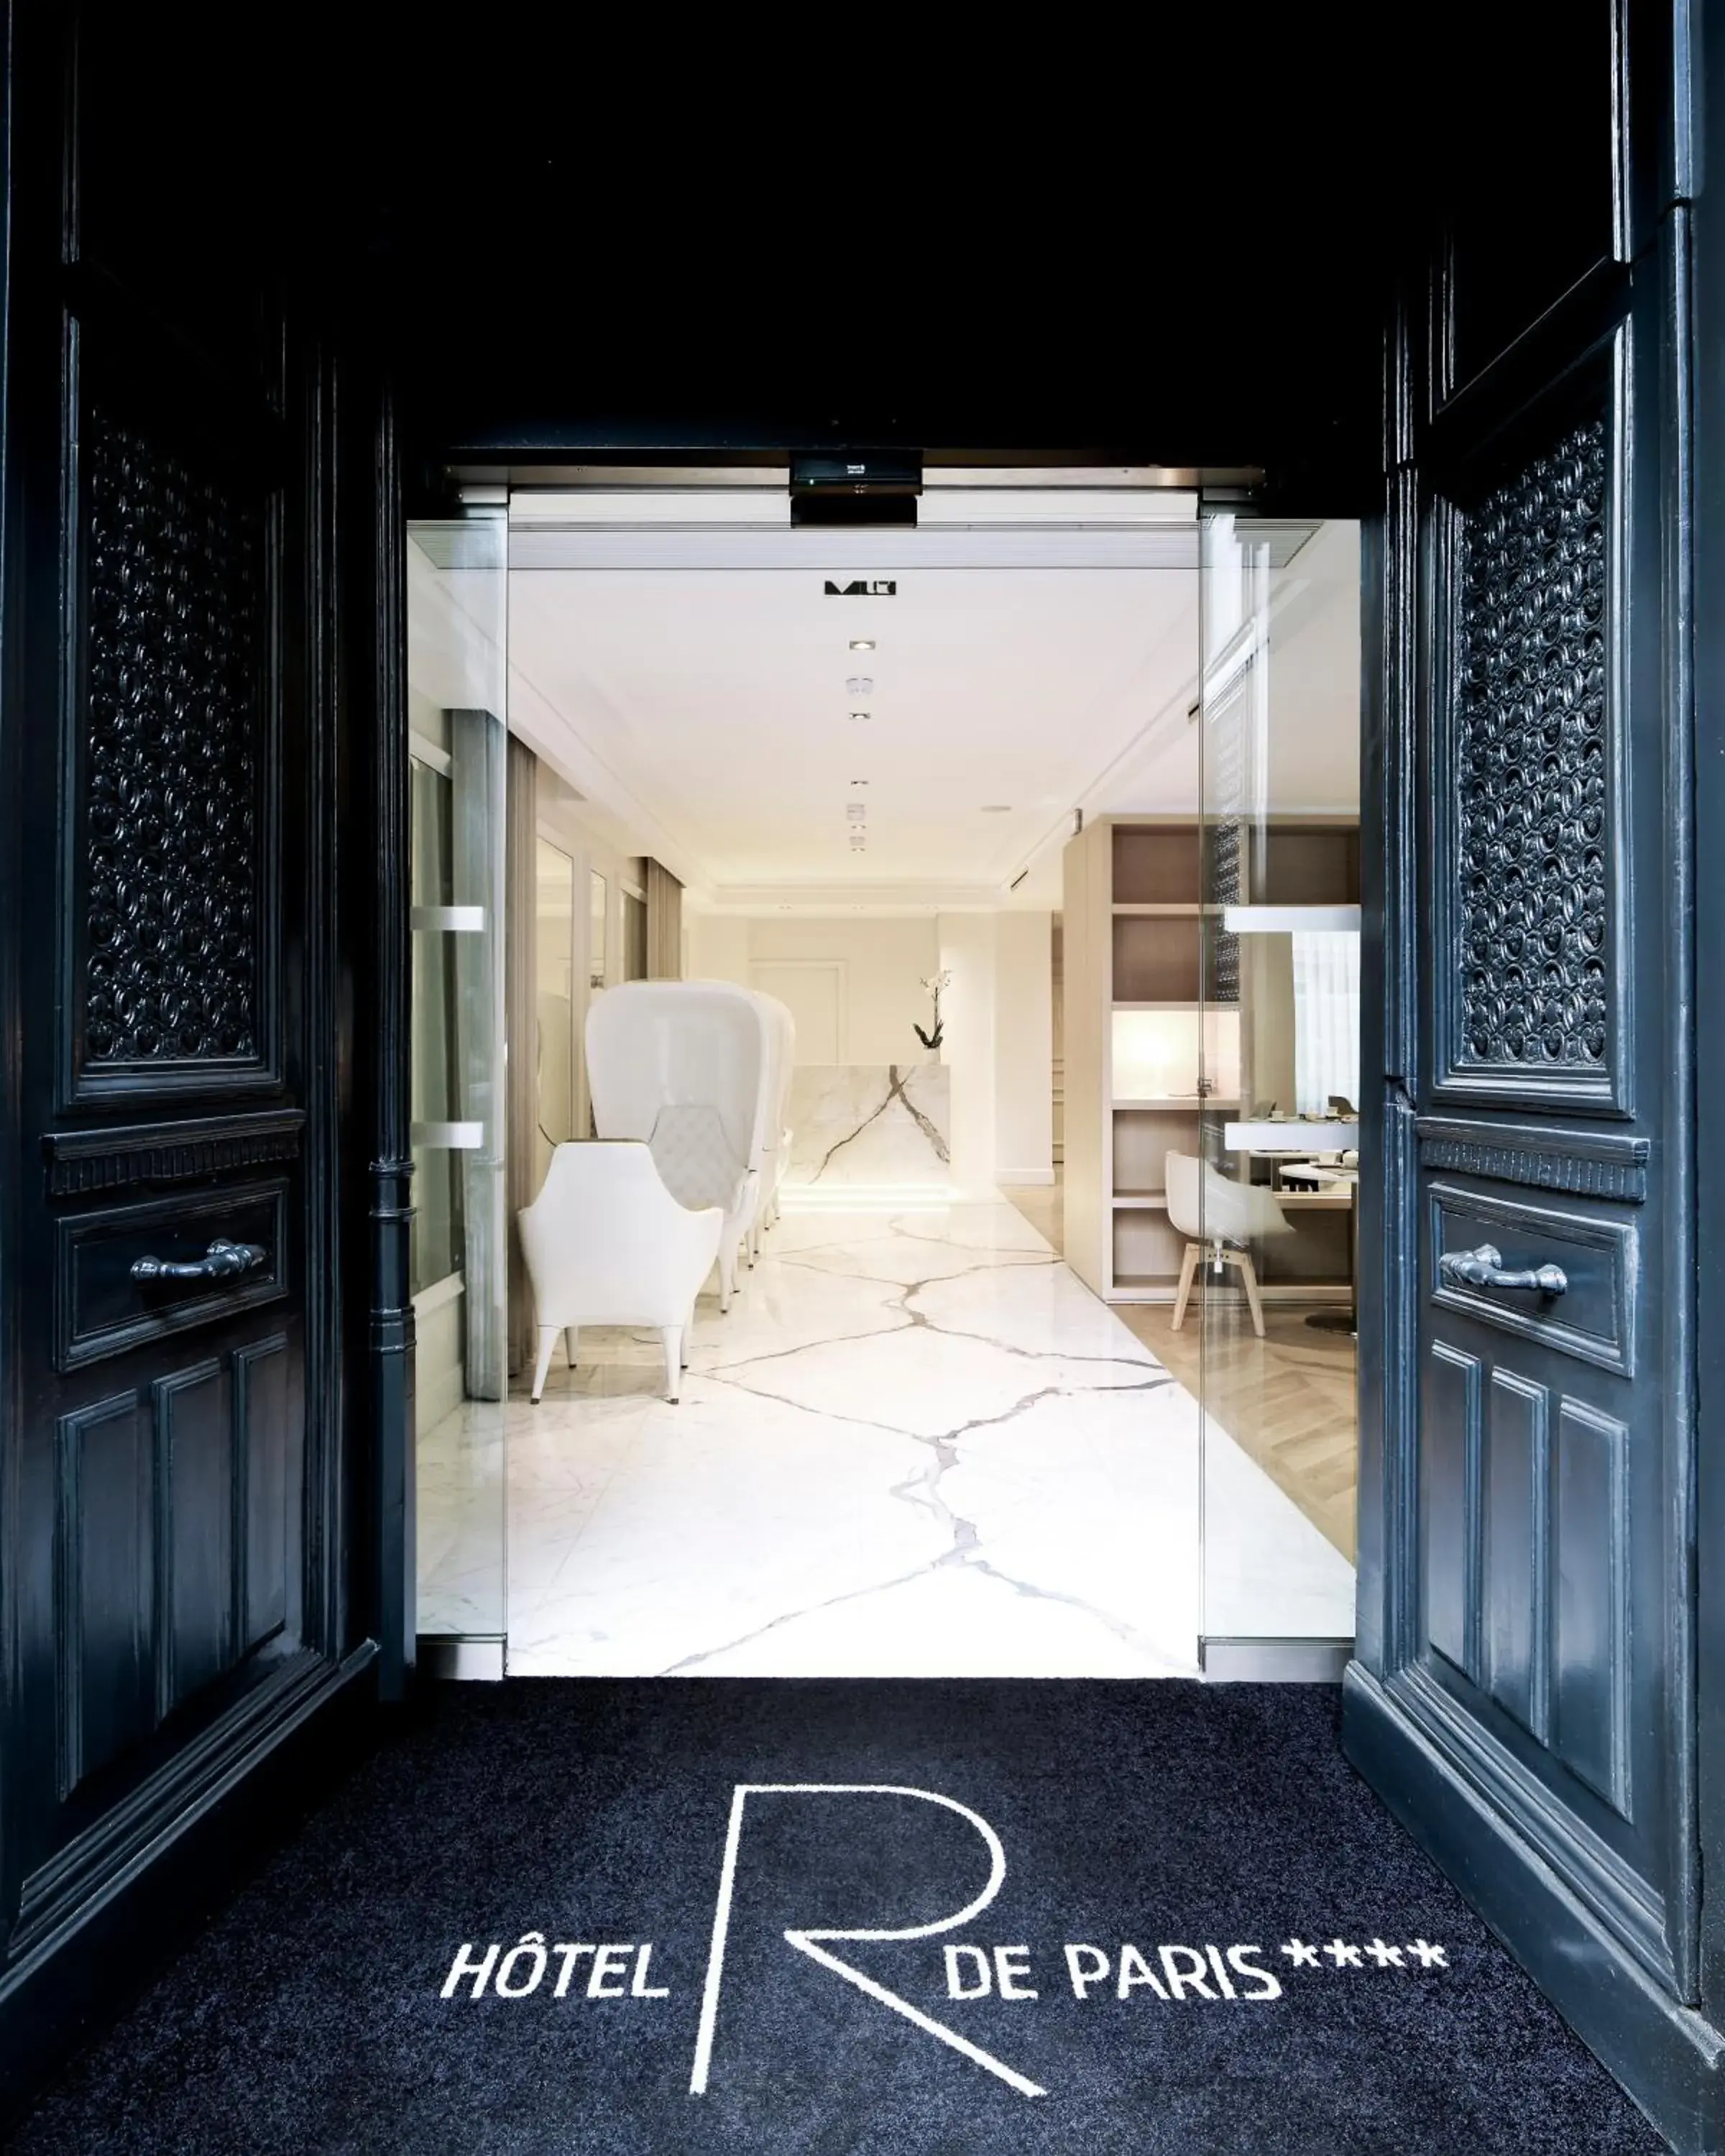 Facade/entrance in Hotel R De Paris - Boutique Hotel